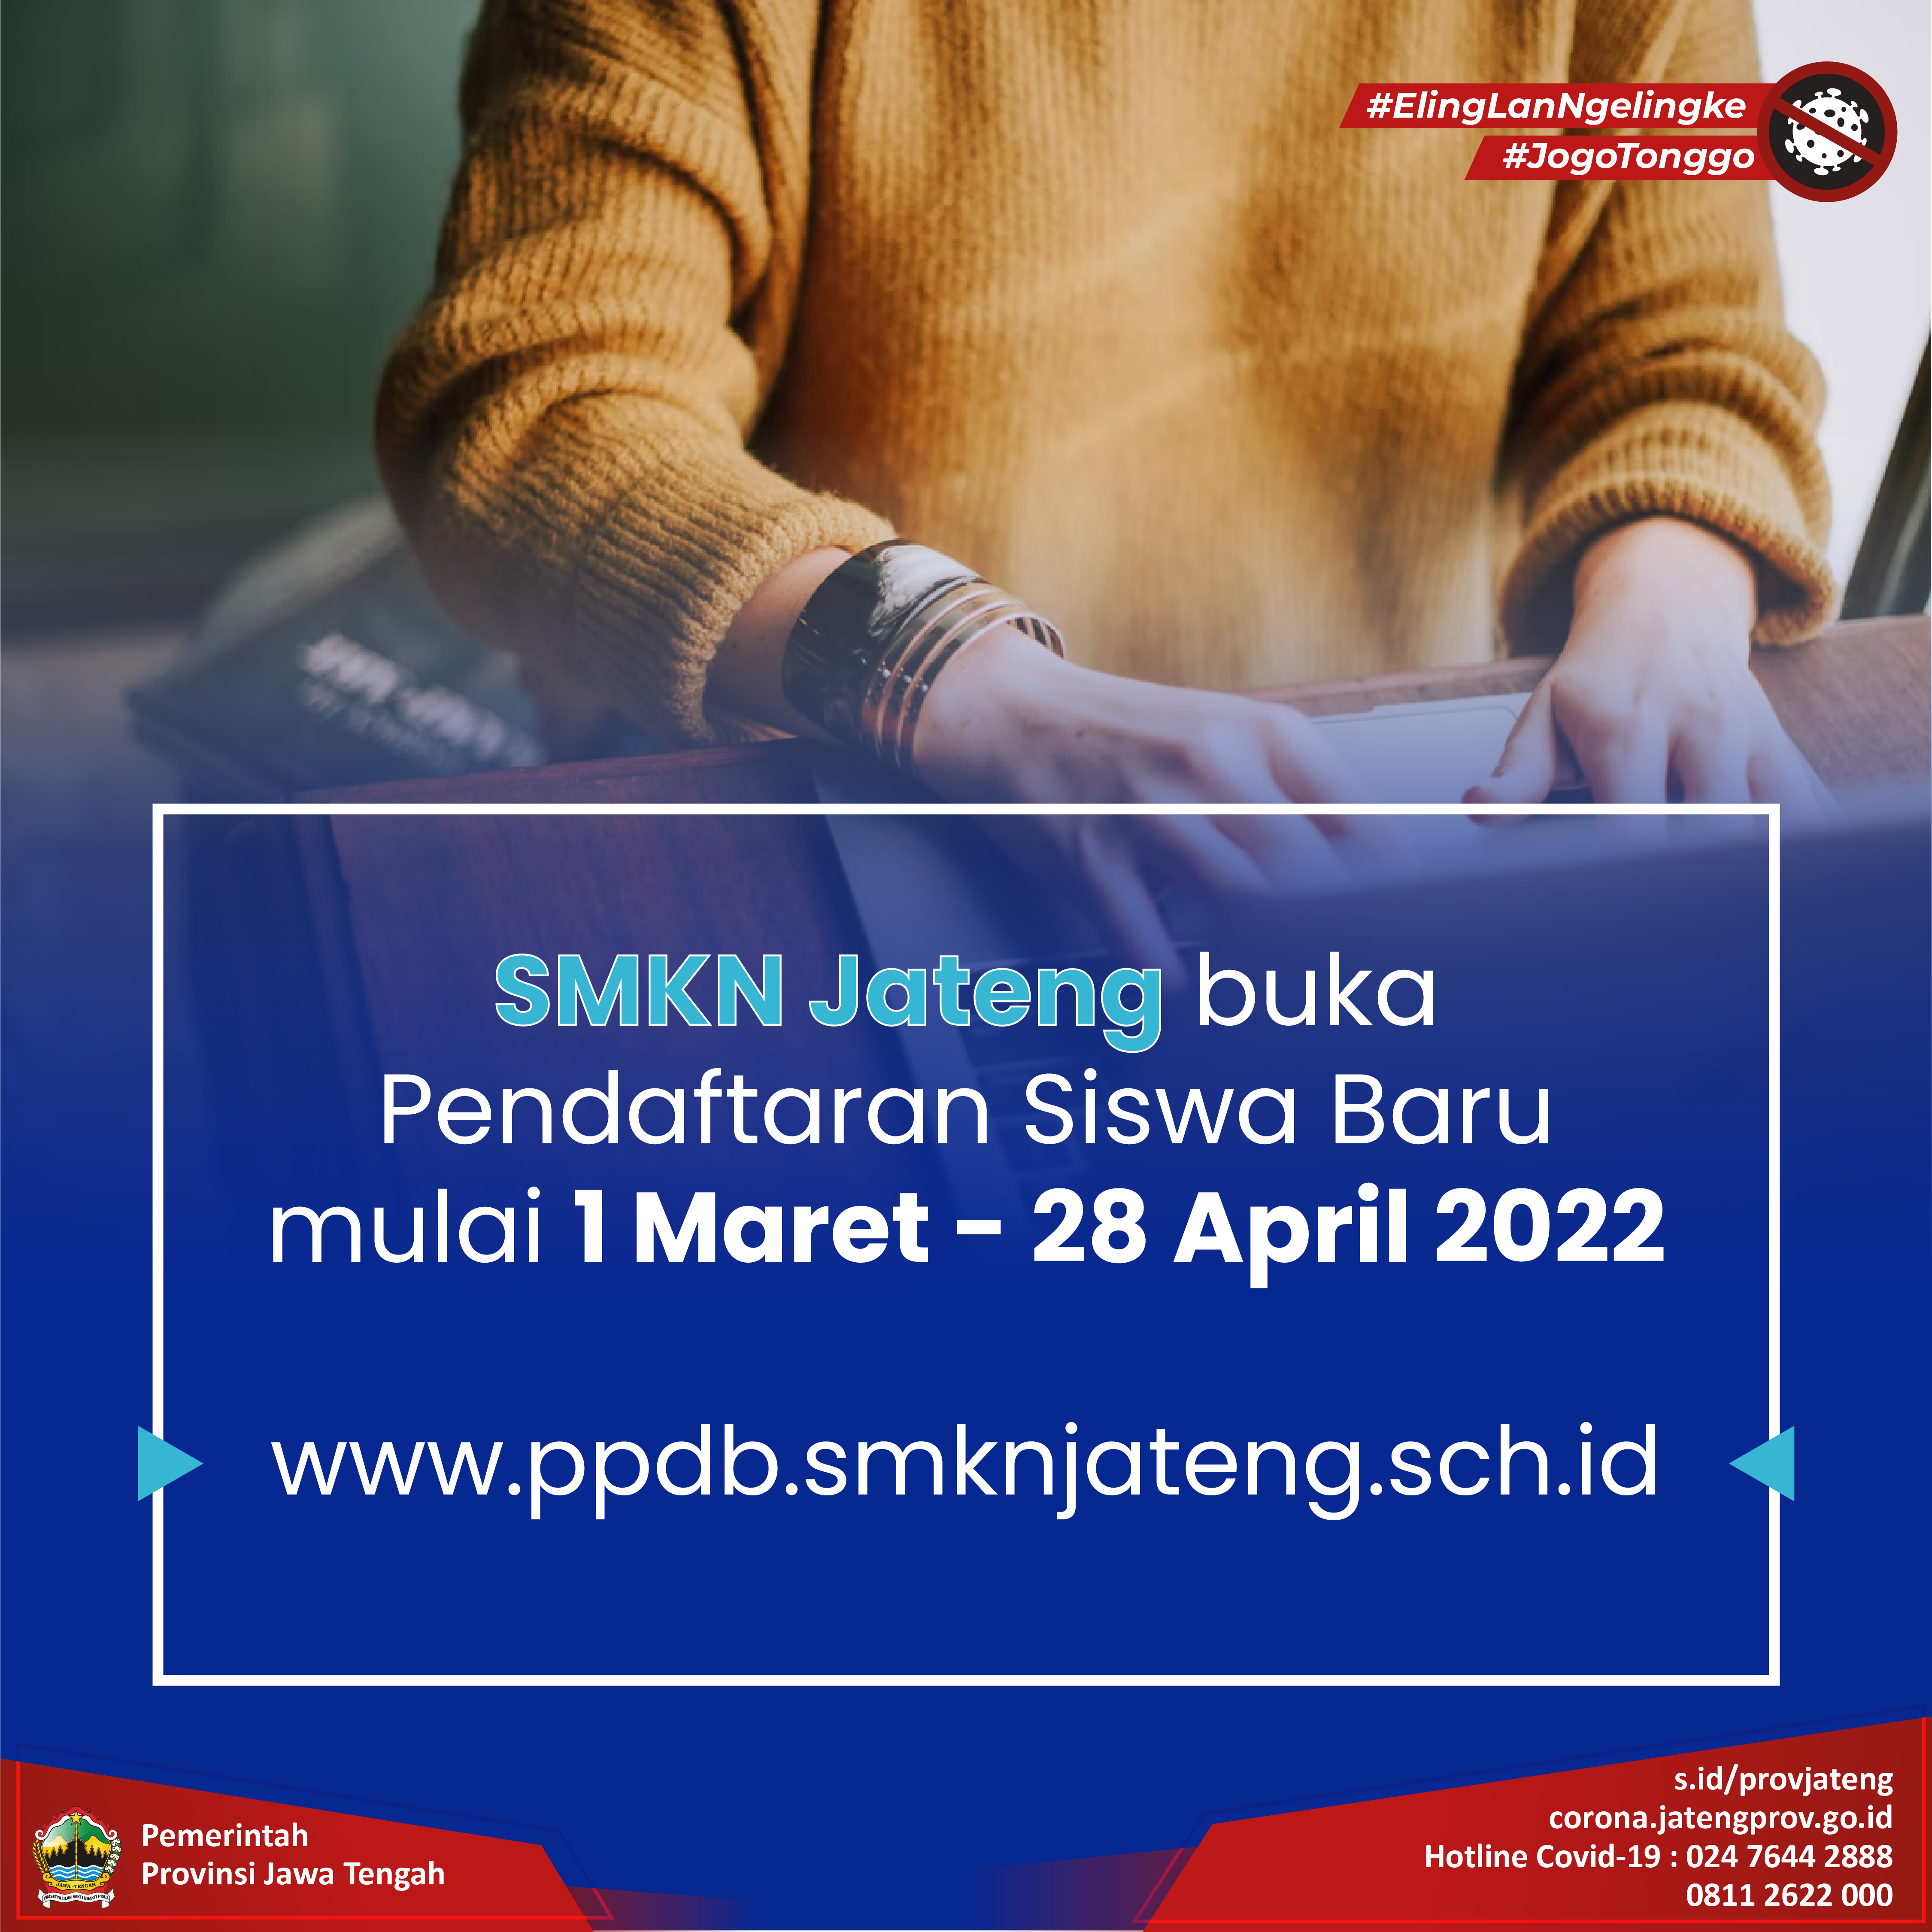 SMK Jateng Buka Pendaftaran